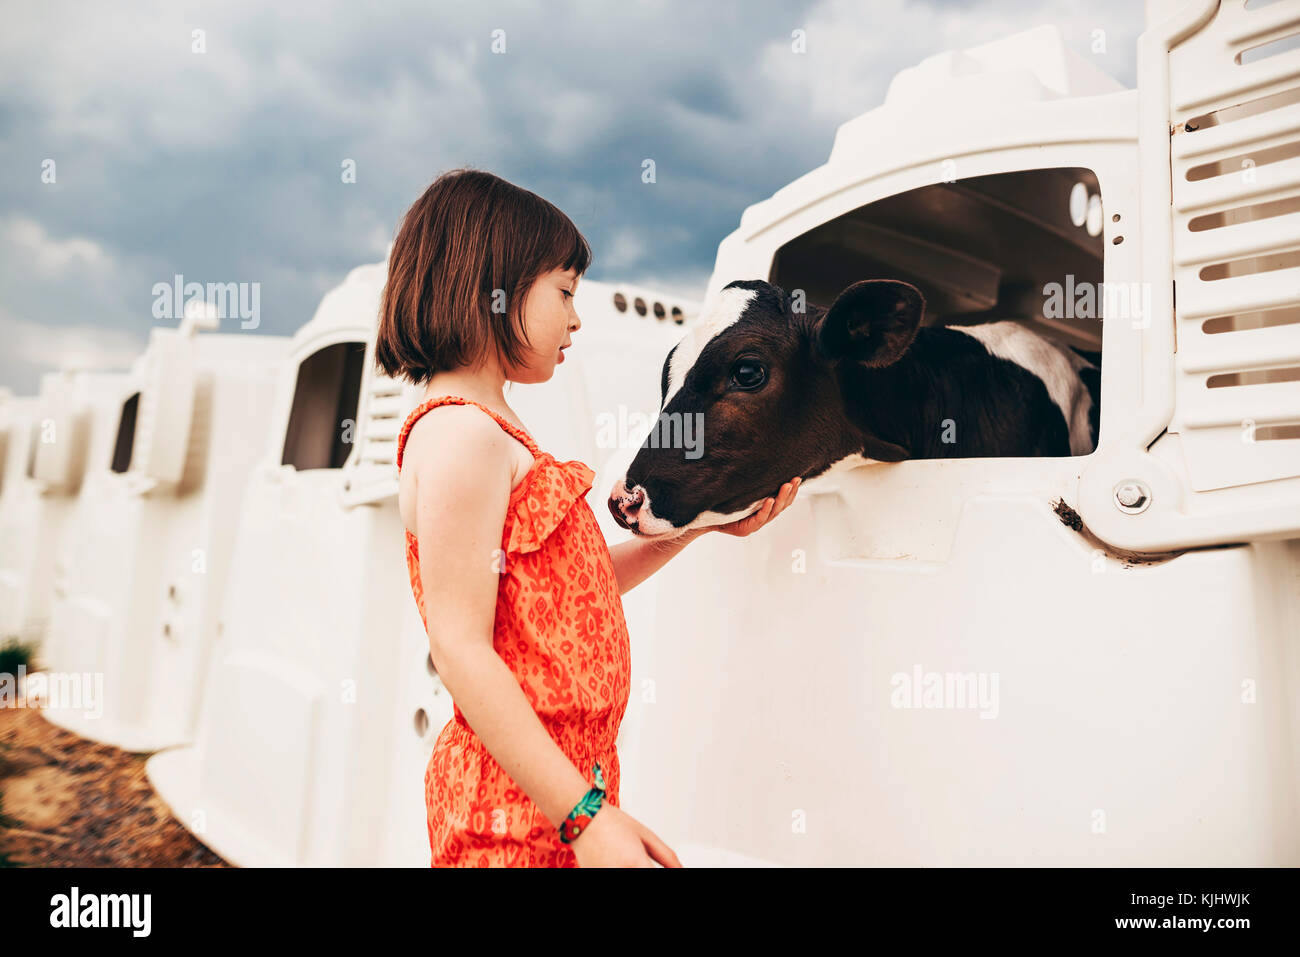 Mädchen streicheln ein Baby Kuh in einer Calf hutch Stockfoto